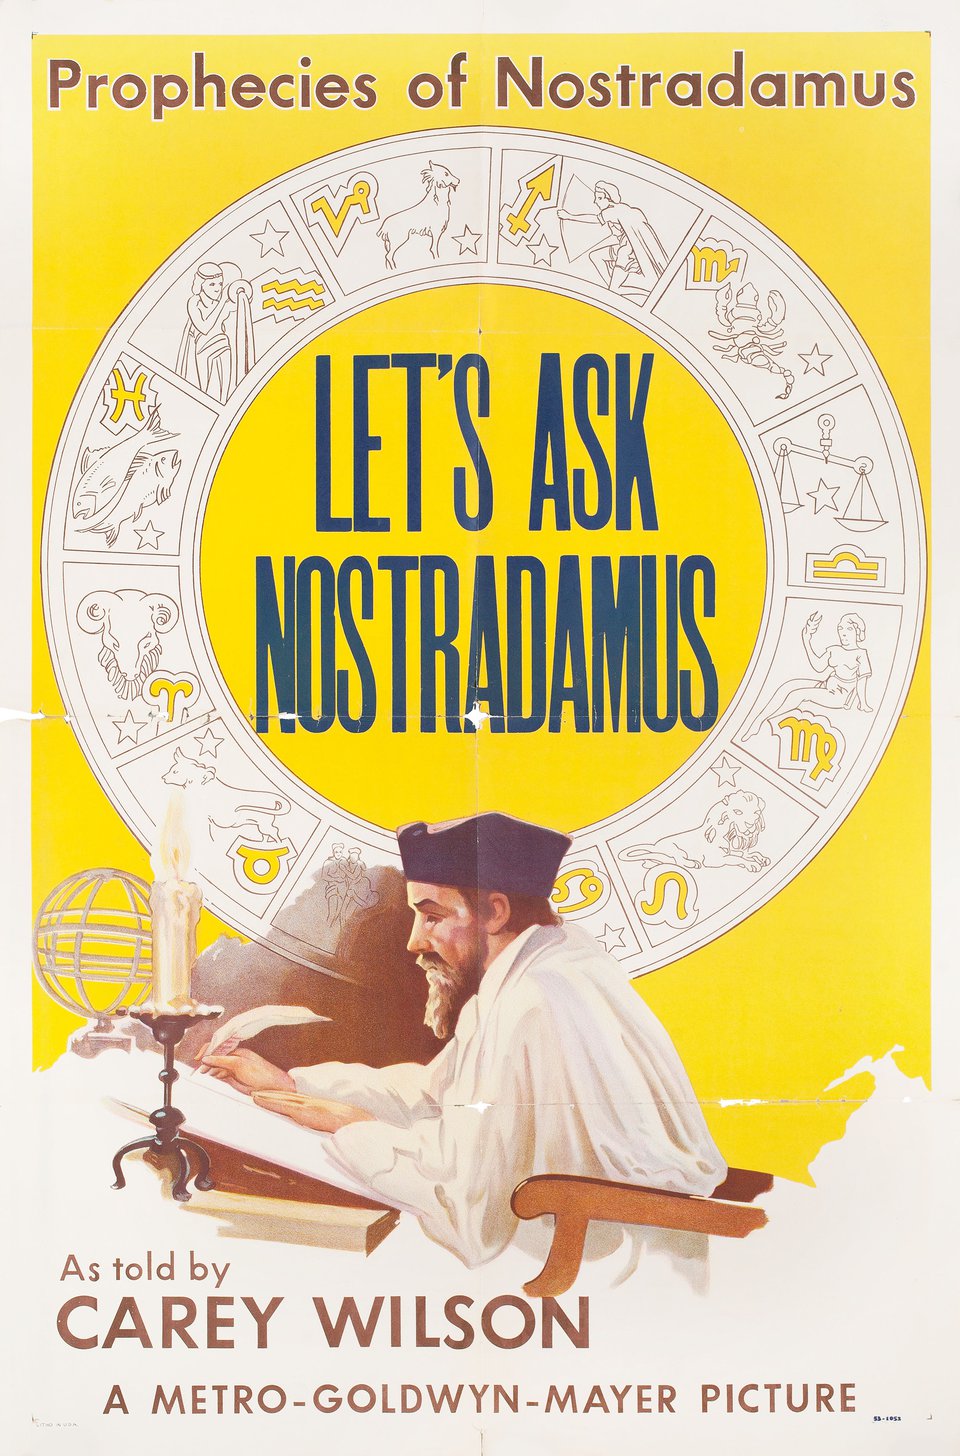 Let's Ask Nostradamus (Prophecies of Nostradamus #2)